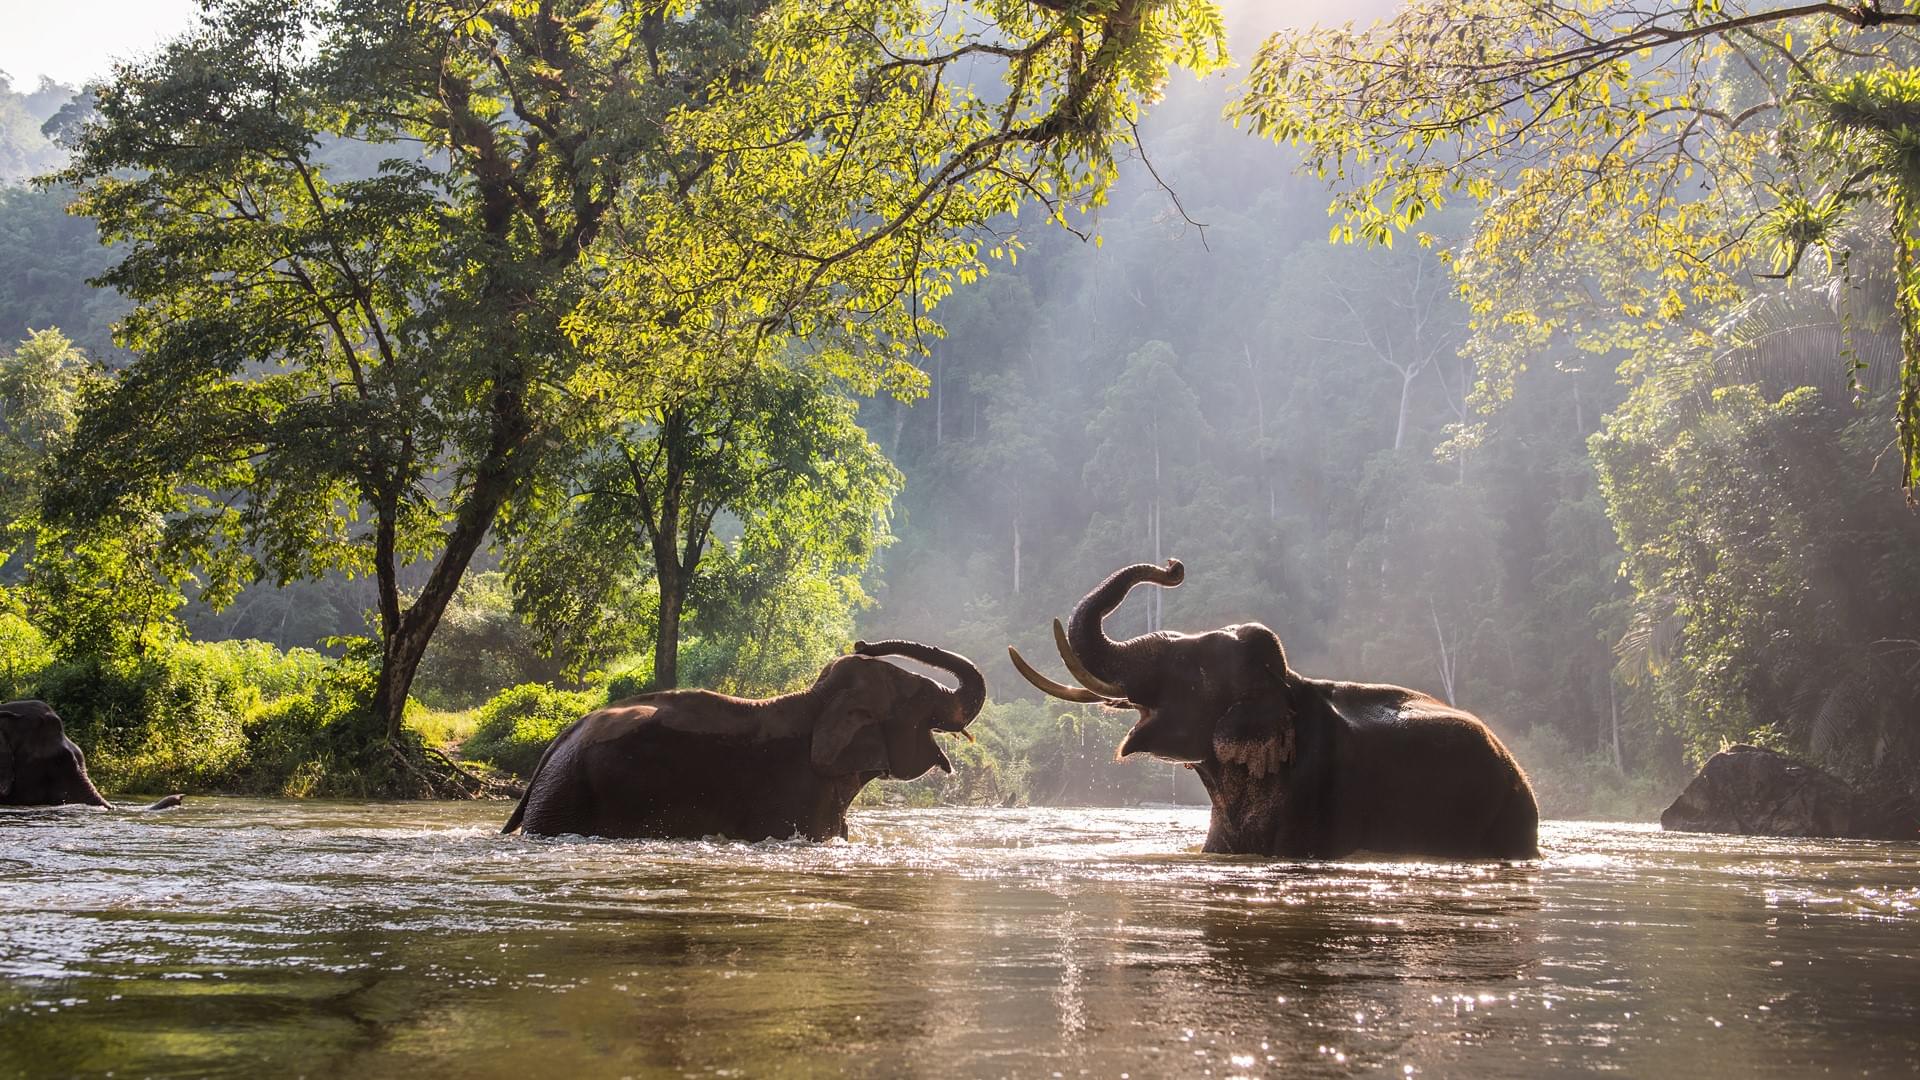 Step into the Elephant Jungle Sanctuary, where a warm welcome awaits you.